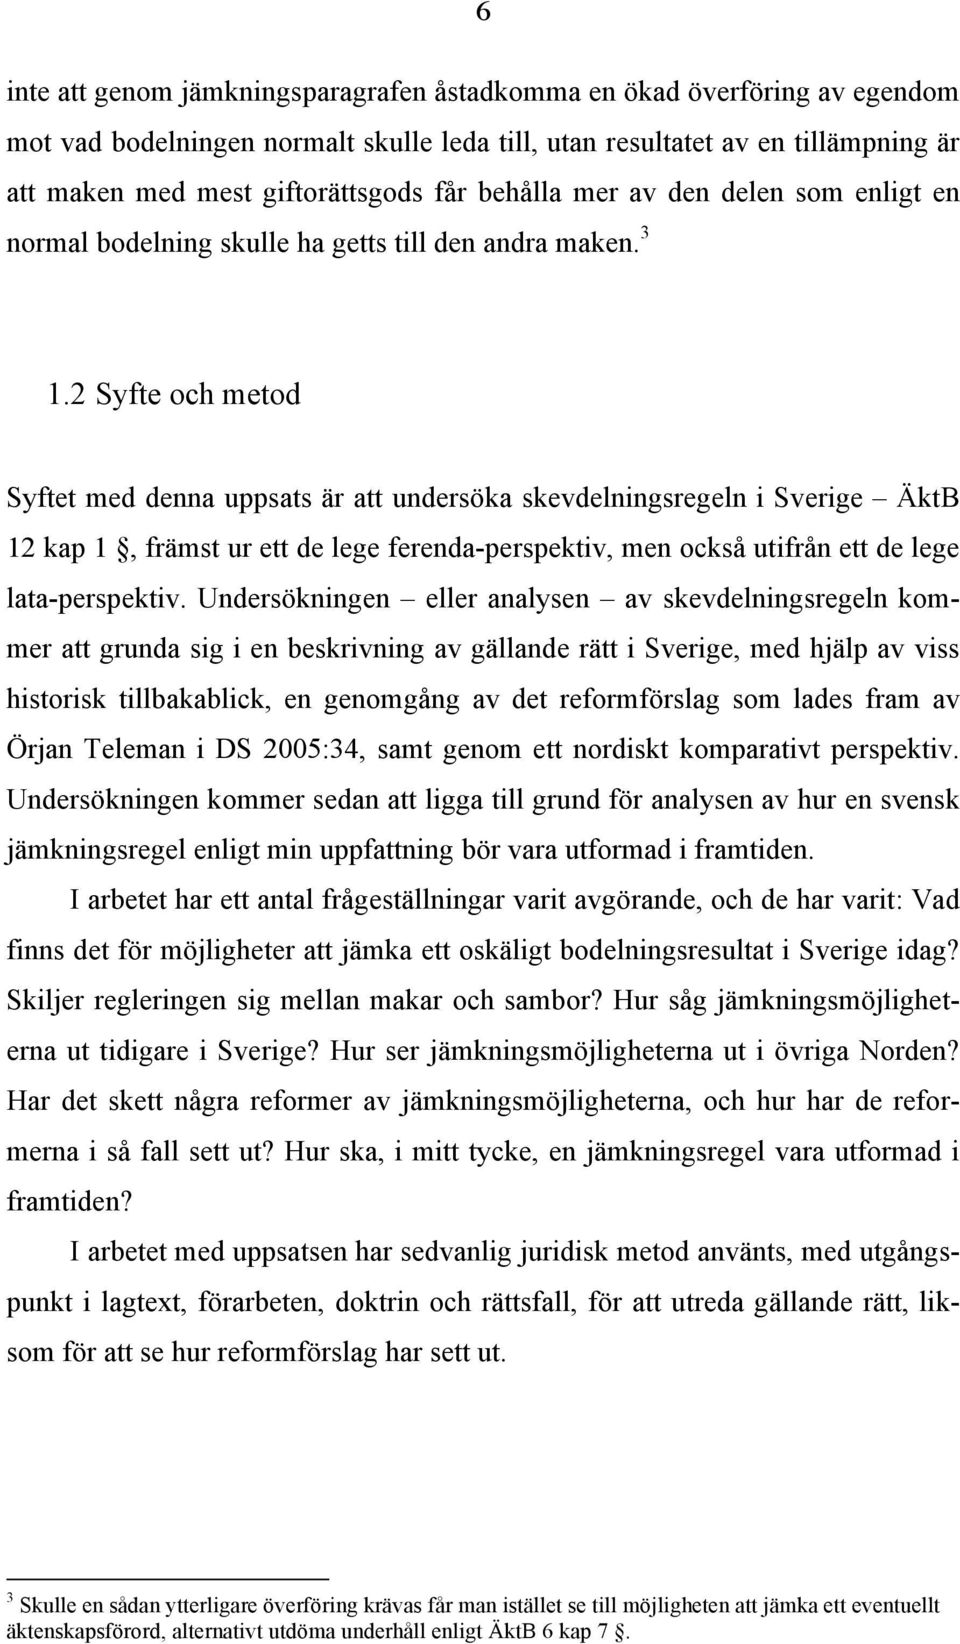 2 Syfte och metod Syftet med denna uppsats är att undersöka skevdelningsregeln i Sverige ÄktB 12 kap 1, främst ur ett de lege ferenda-perspektiv, men också utifrån ett de lege lata-perspektiv.